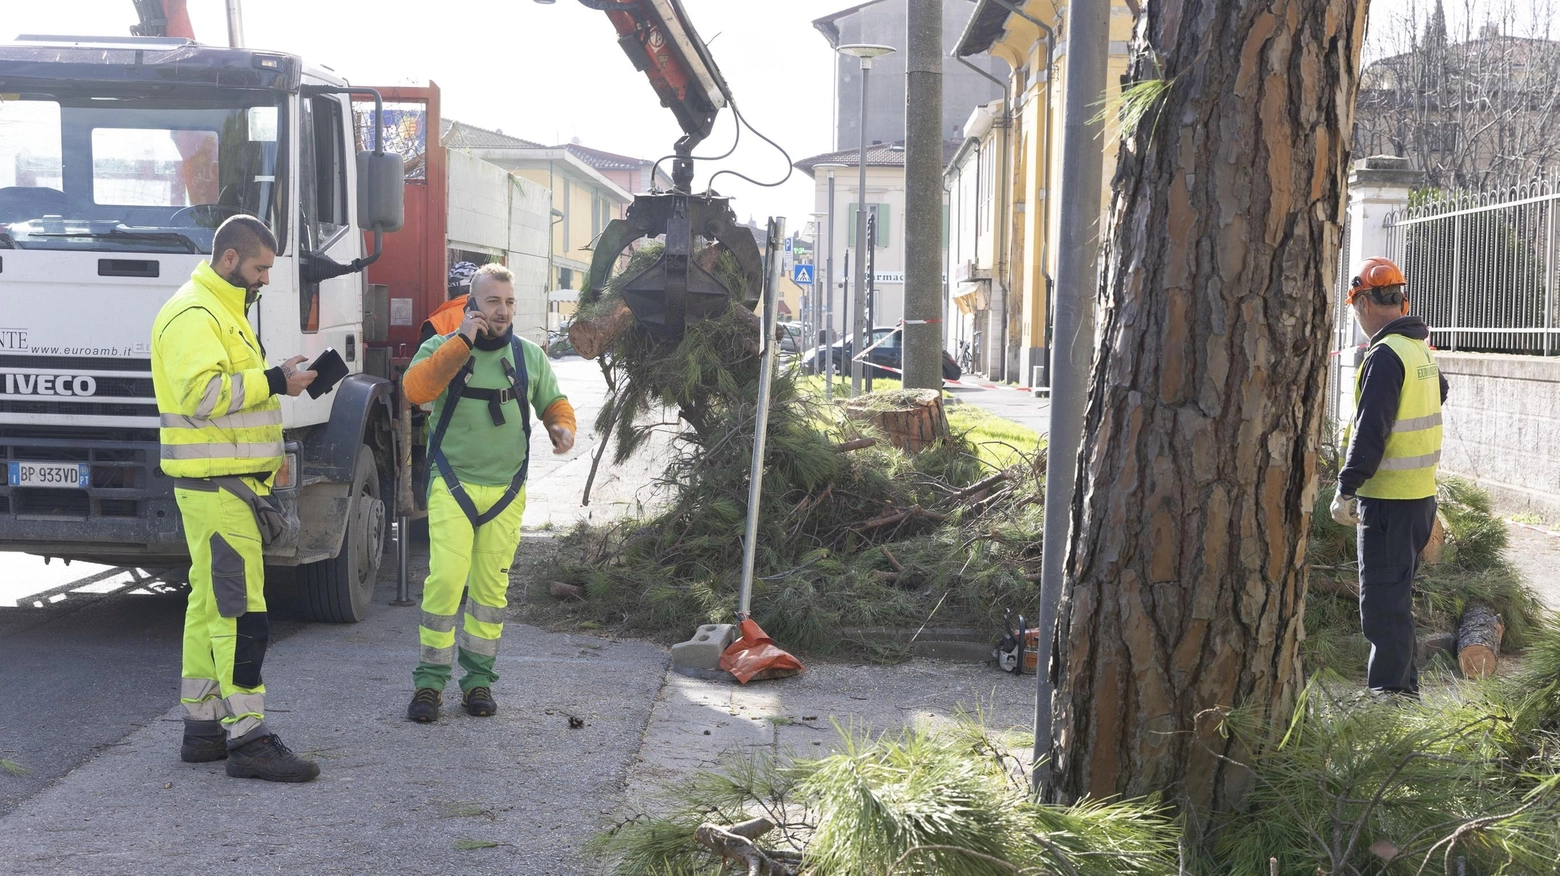 Taglio degli alberi nei quartieri: "Non è vero che uno vale... uno"